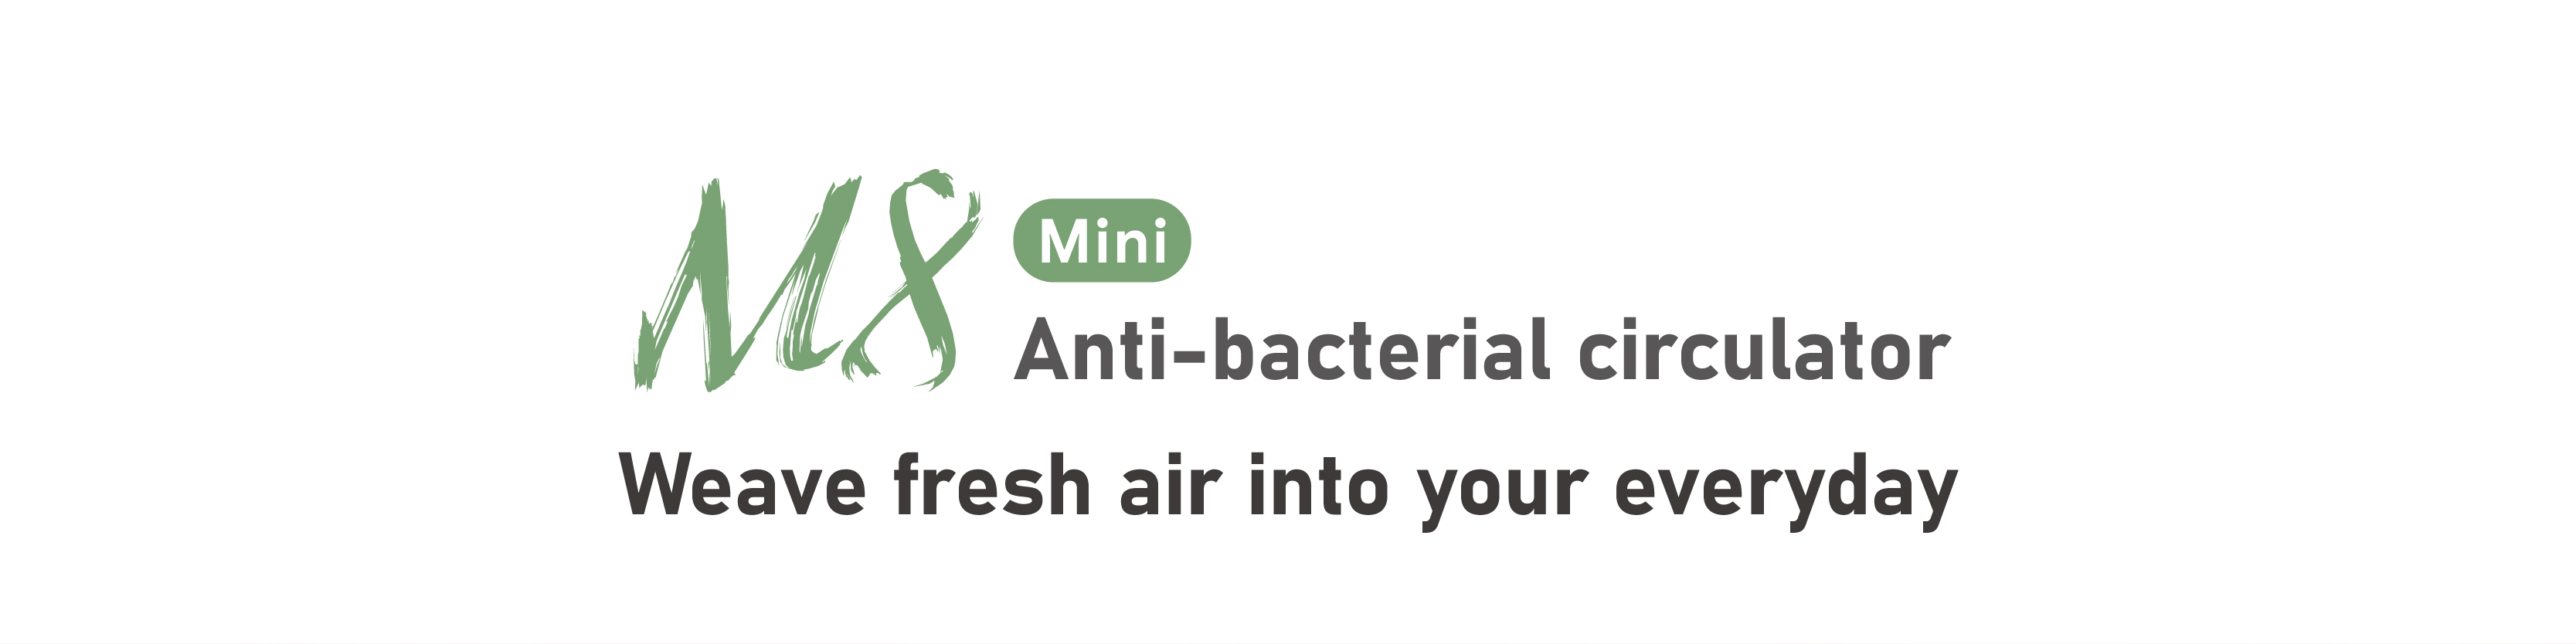 Mini Anti-bacterial Circulator